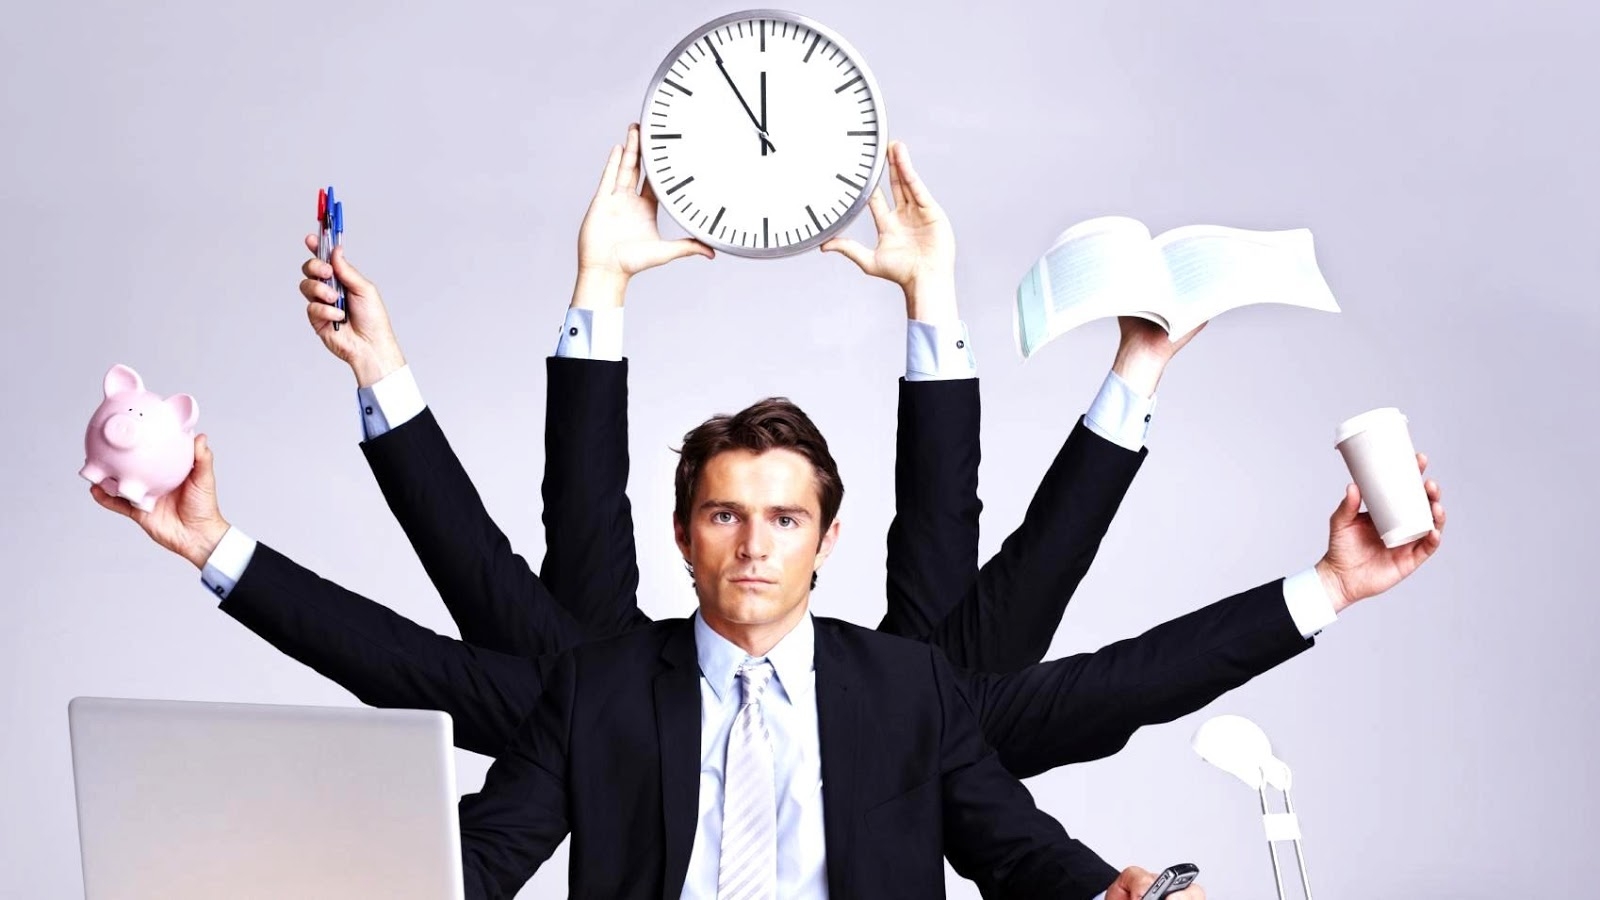 Bilecik Valiliği'nden Yeni Mesai Saatleri Açıklaması: Kamu Çalışanları Hangi Saatlerde Görev Yapacak?